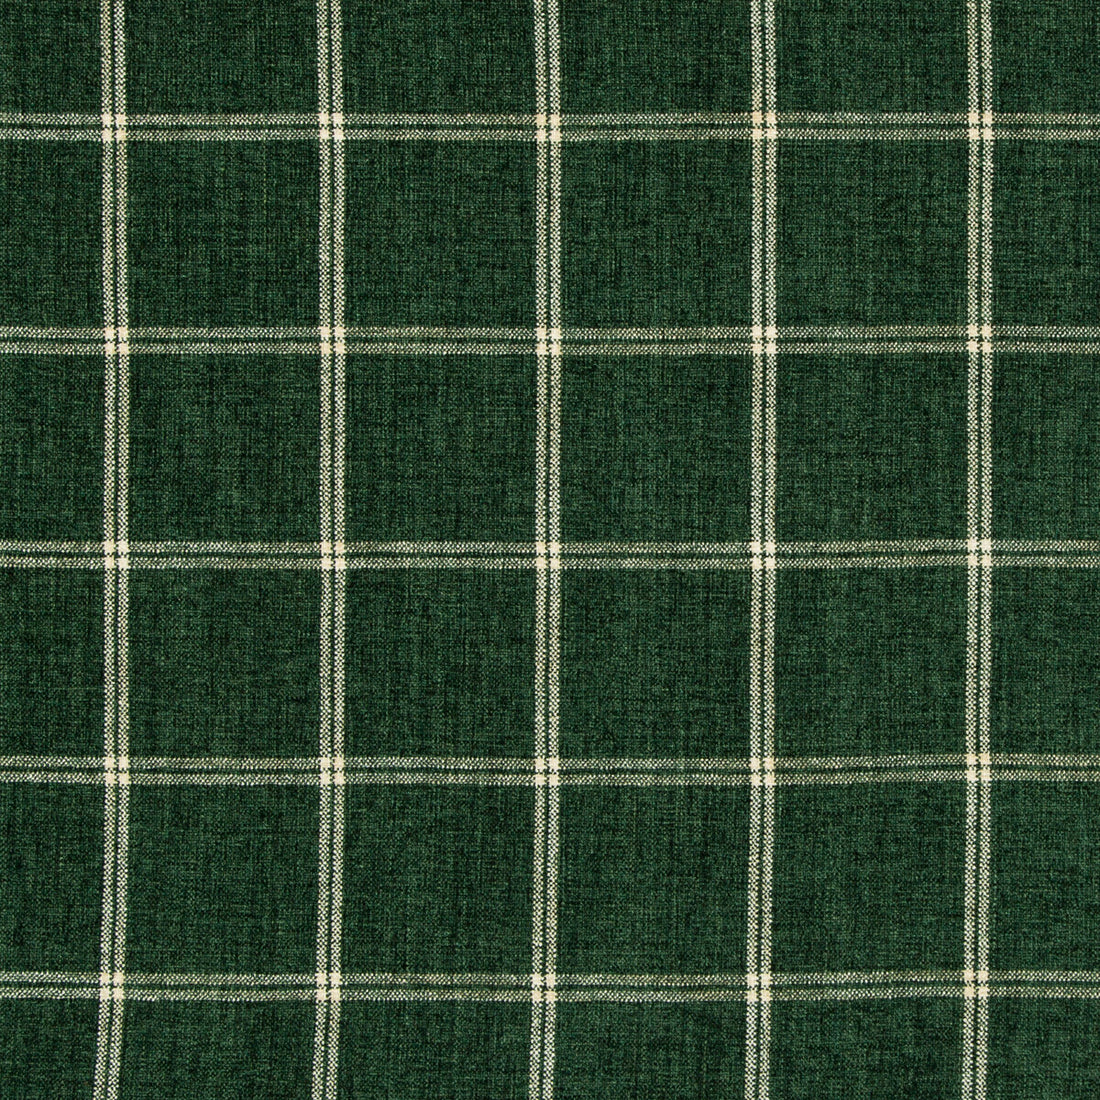 Kravet Basics fabric in 35774-53 color - pattern 35774.53.0 - by Kravet Basics